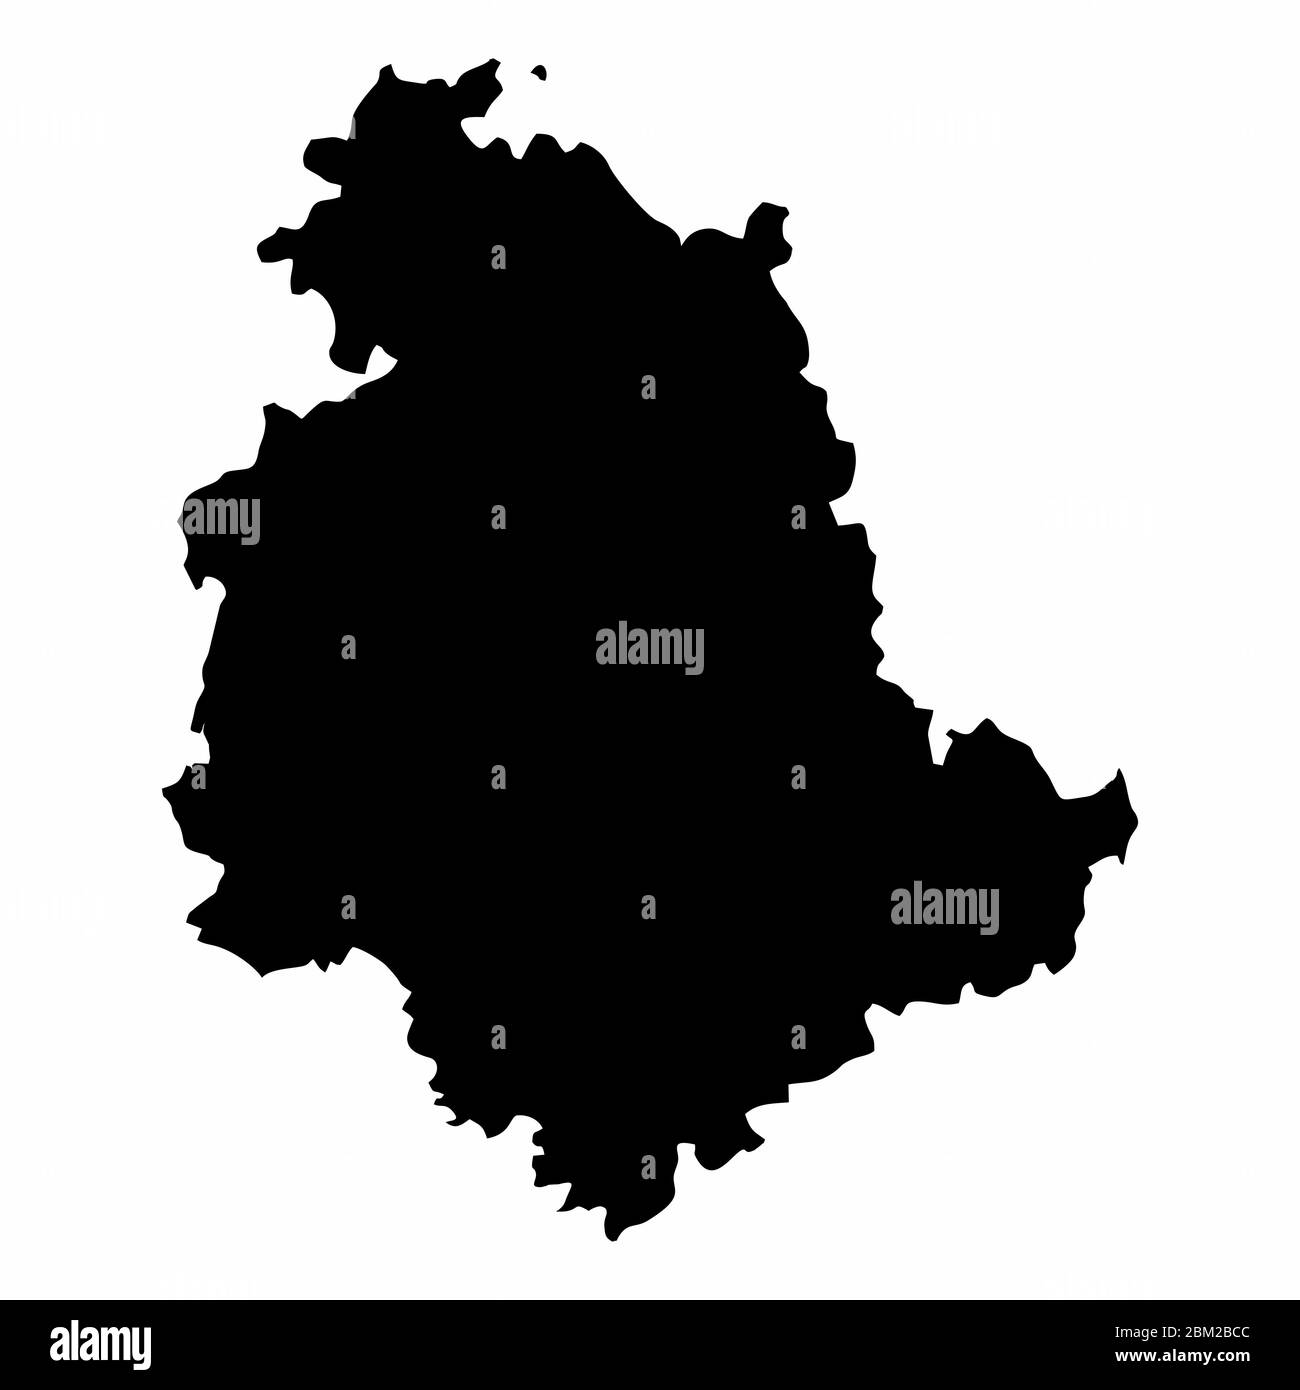 Umbria region silhouette map Stock Vector